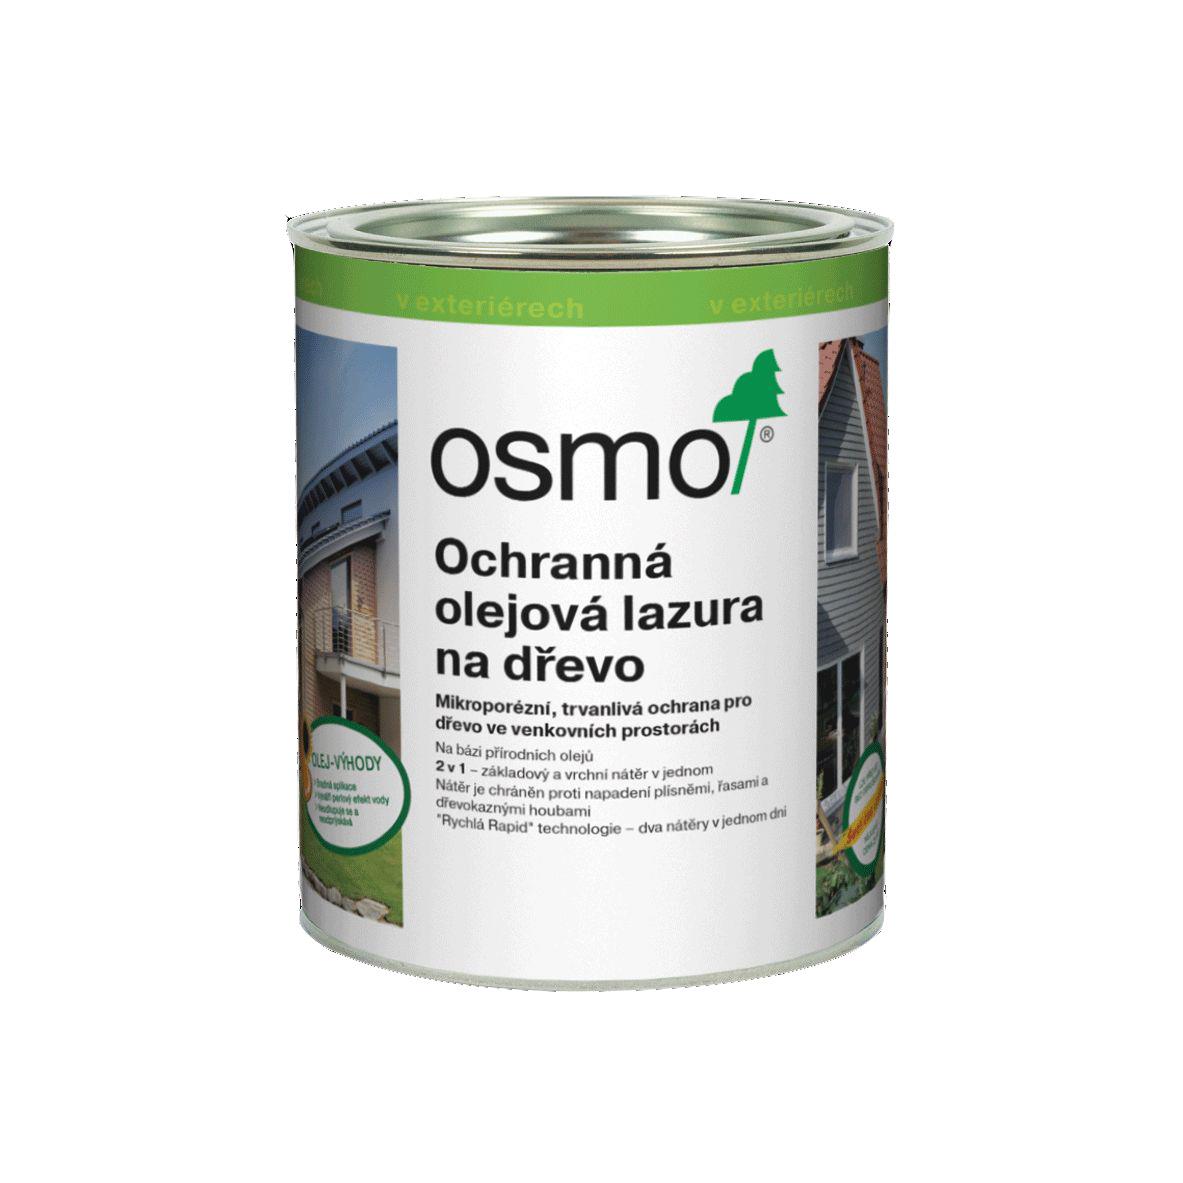 OSMO Ochranná olejová lazura 729 jedlově zelená 0,75l